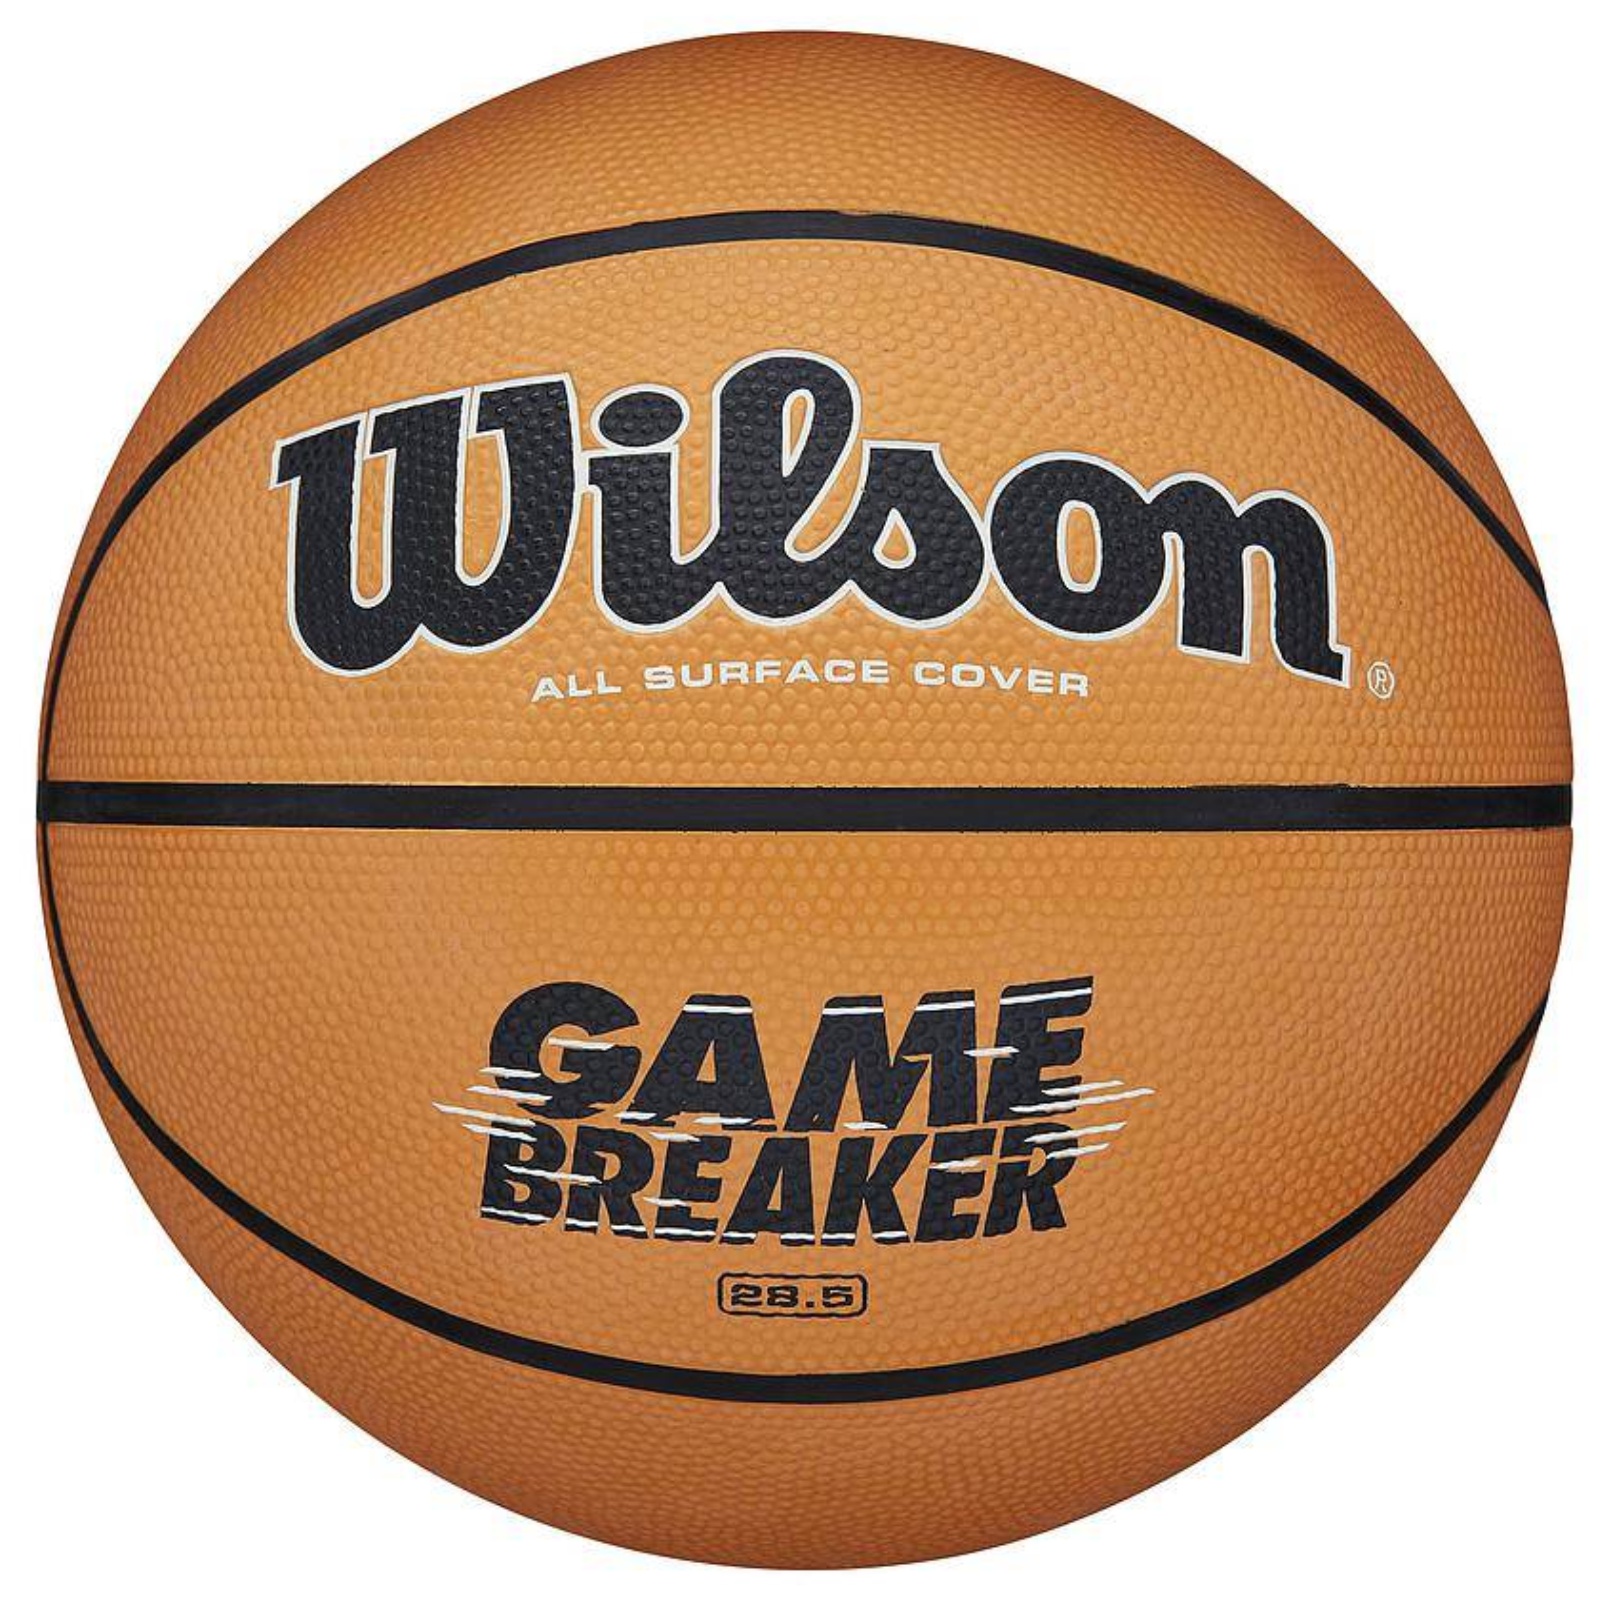 Wilson Gamebreaker - 7